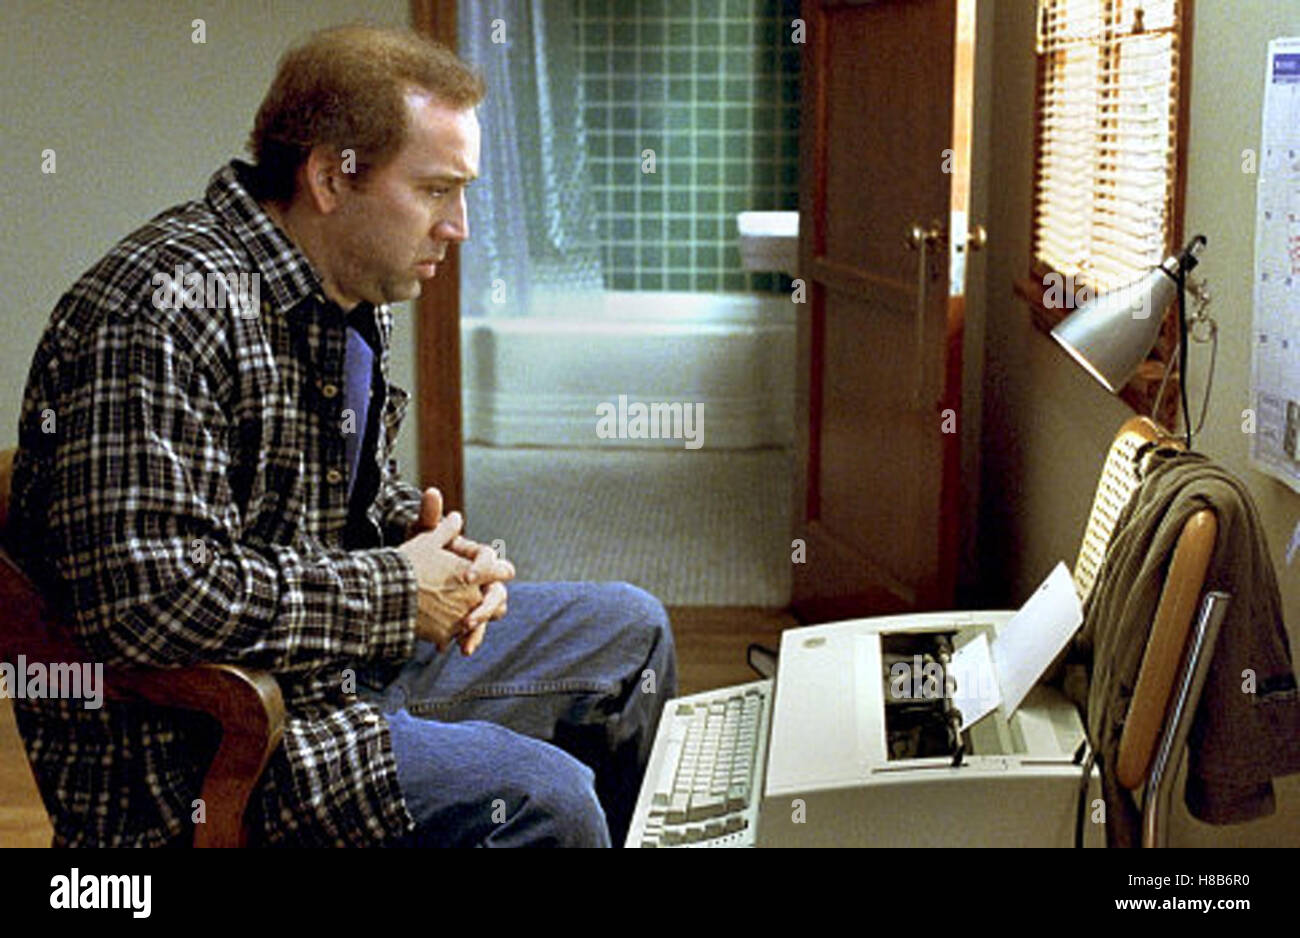 Adattamento, (adattamento) USA 2002, Regie: Spike Jonze, Nicolas Cage, Chiave: Schreibmaschine Foto Stock